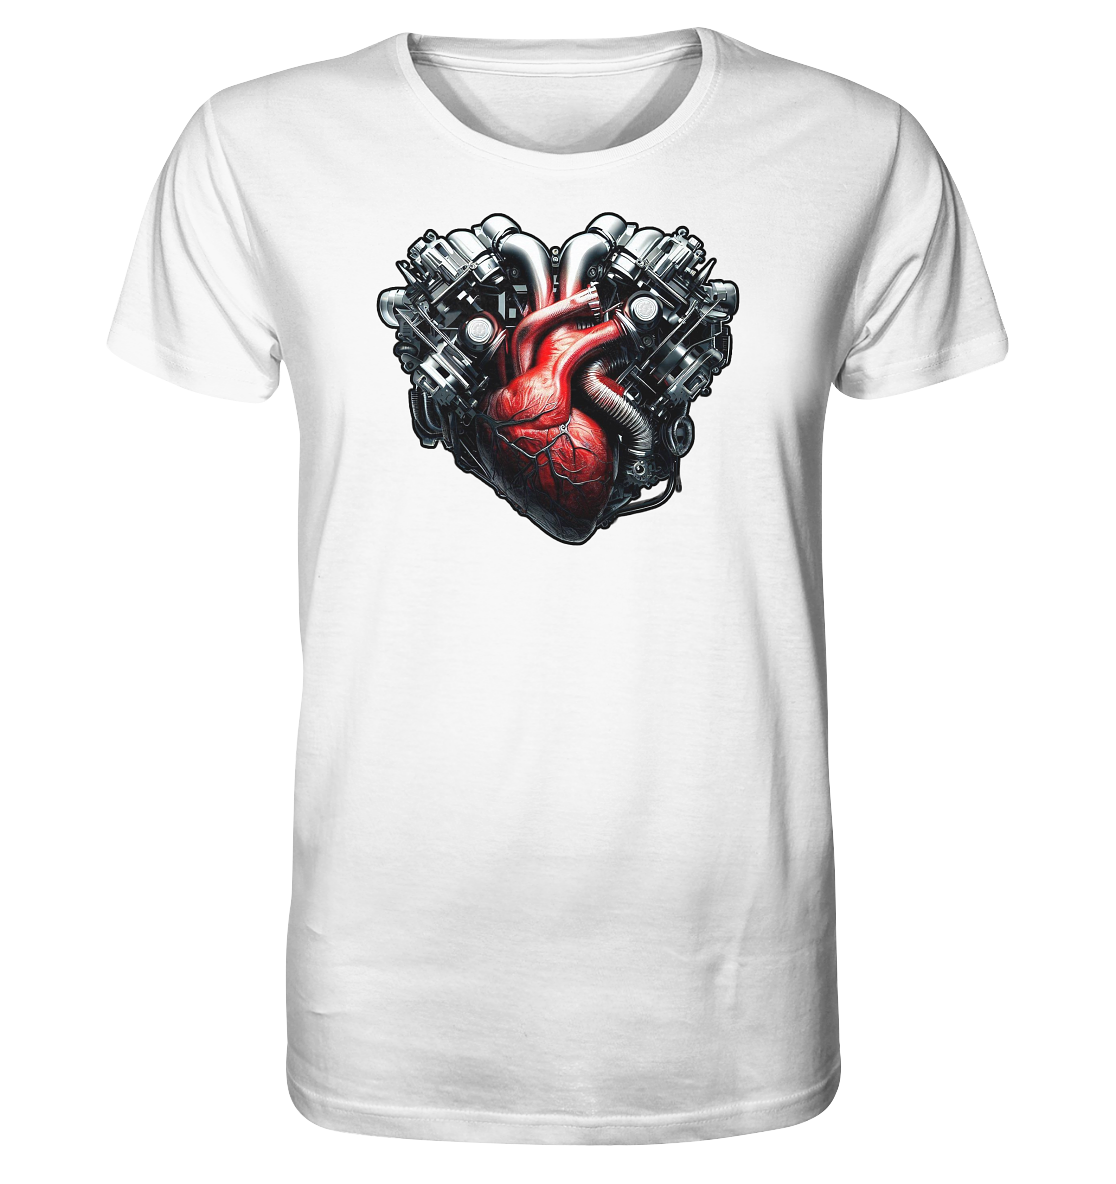 Petrolheart - Organic Shirt